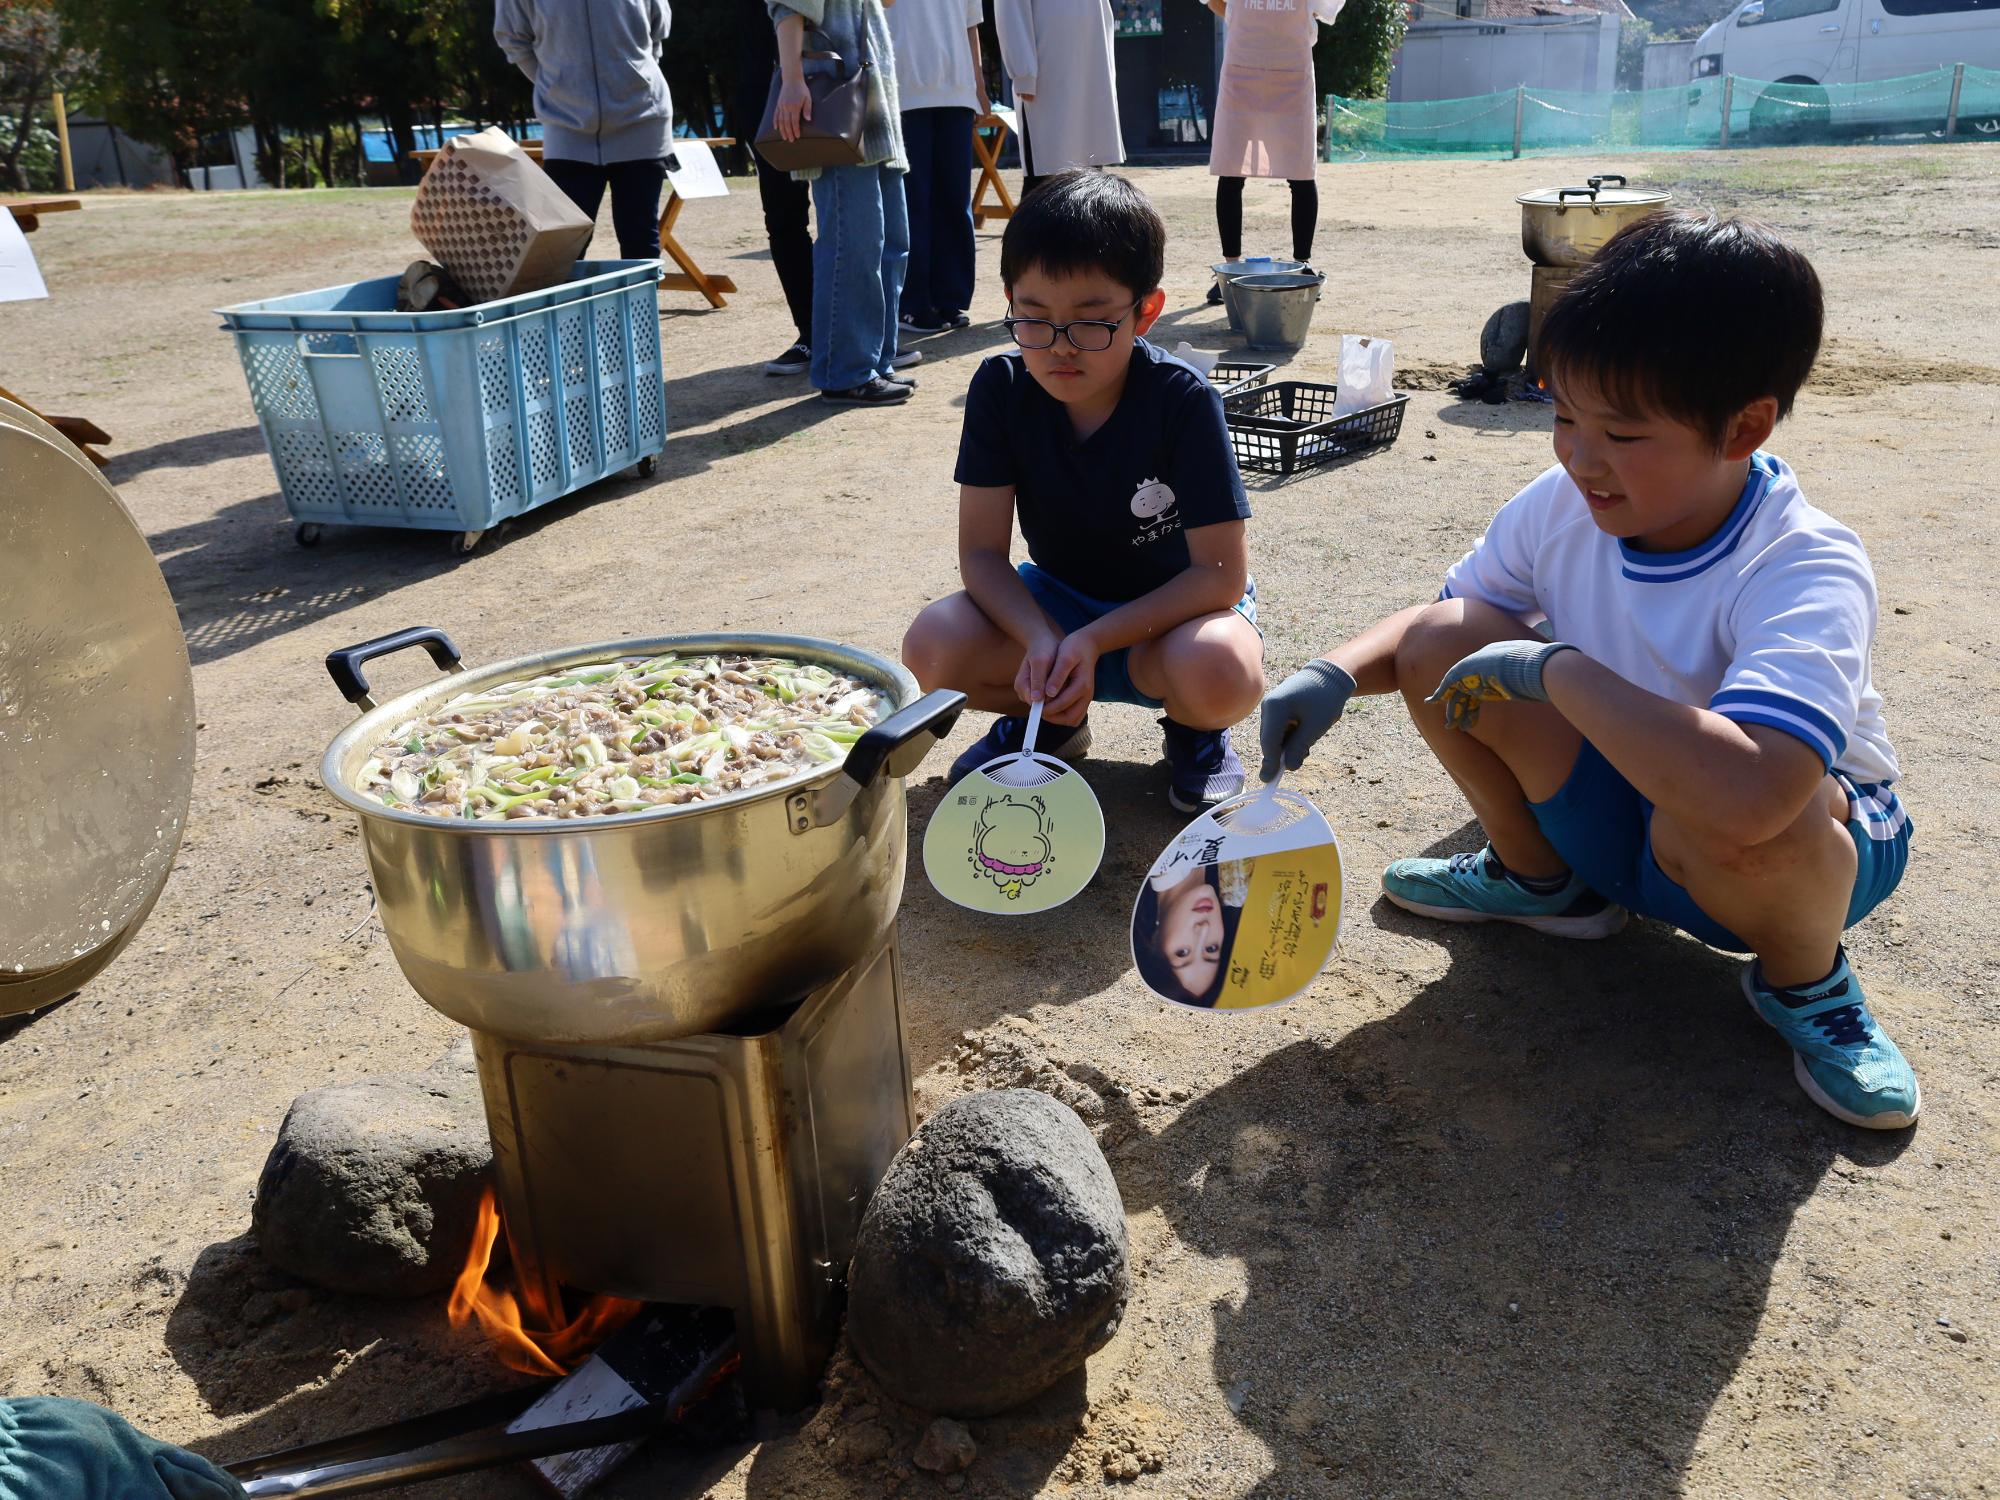 山上小学校芋煮会（防災非常食体験）で、児童がいも煮を調理する様子